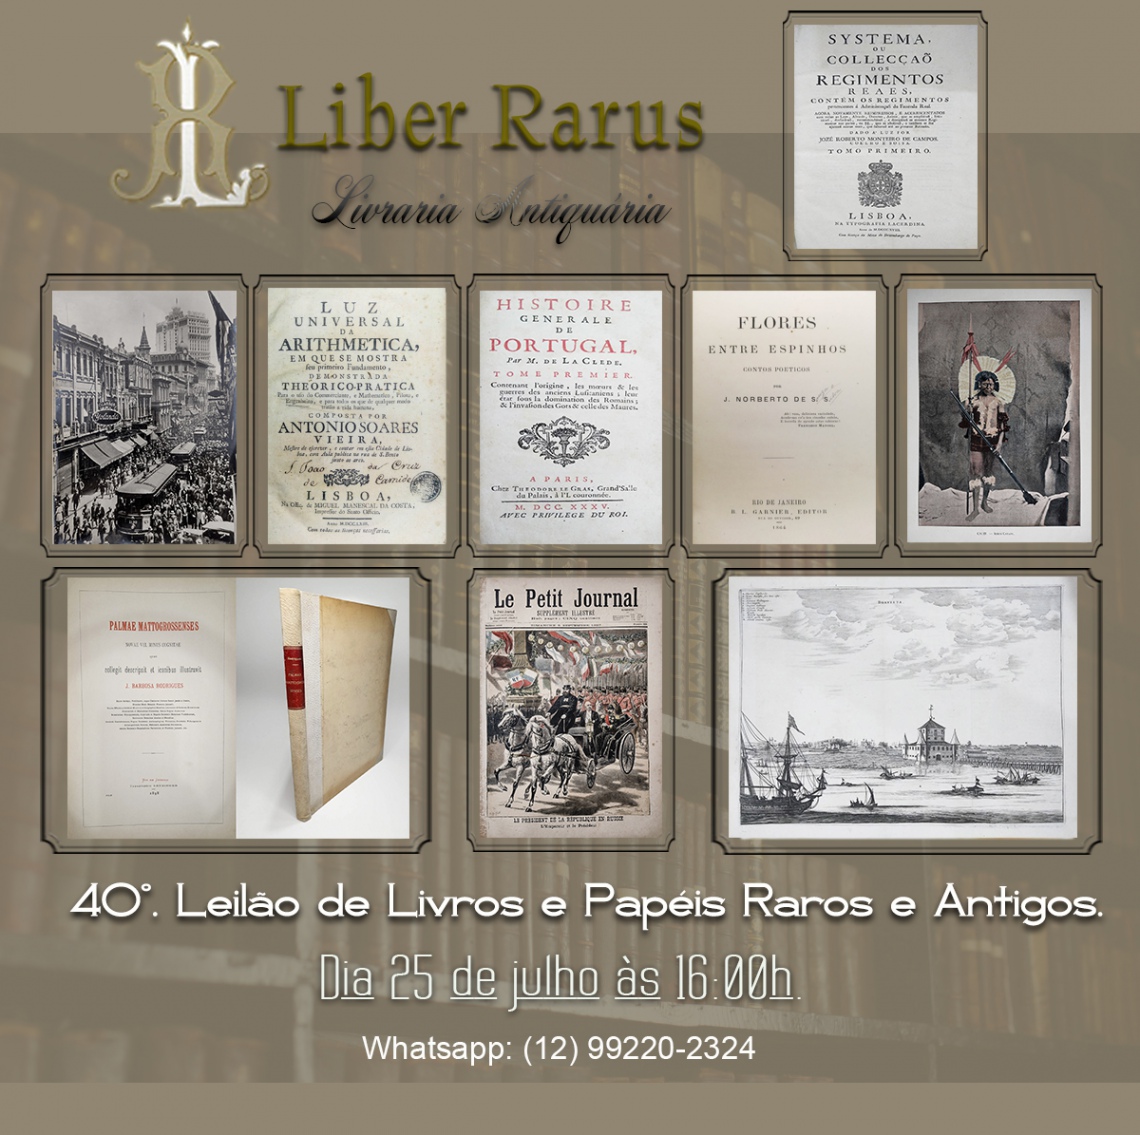 40º Leilão de Livros e Papéis Raros e Antigos - Liber Rarus - 25/7/2022 - 16h